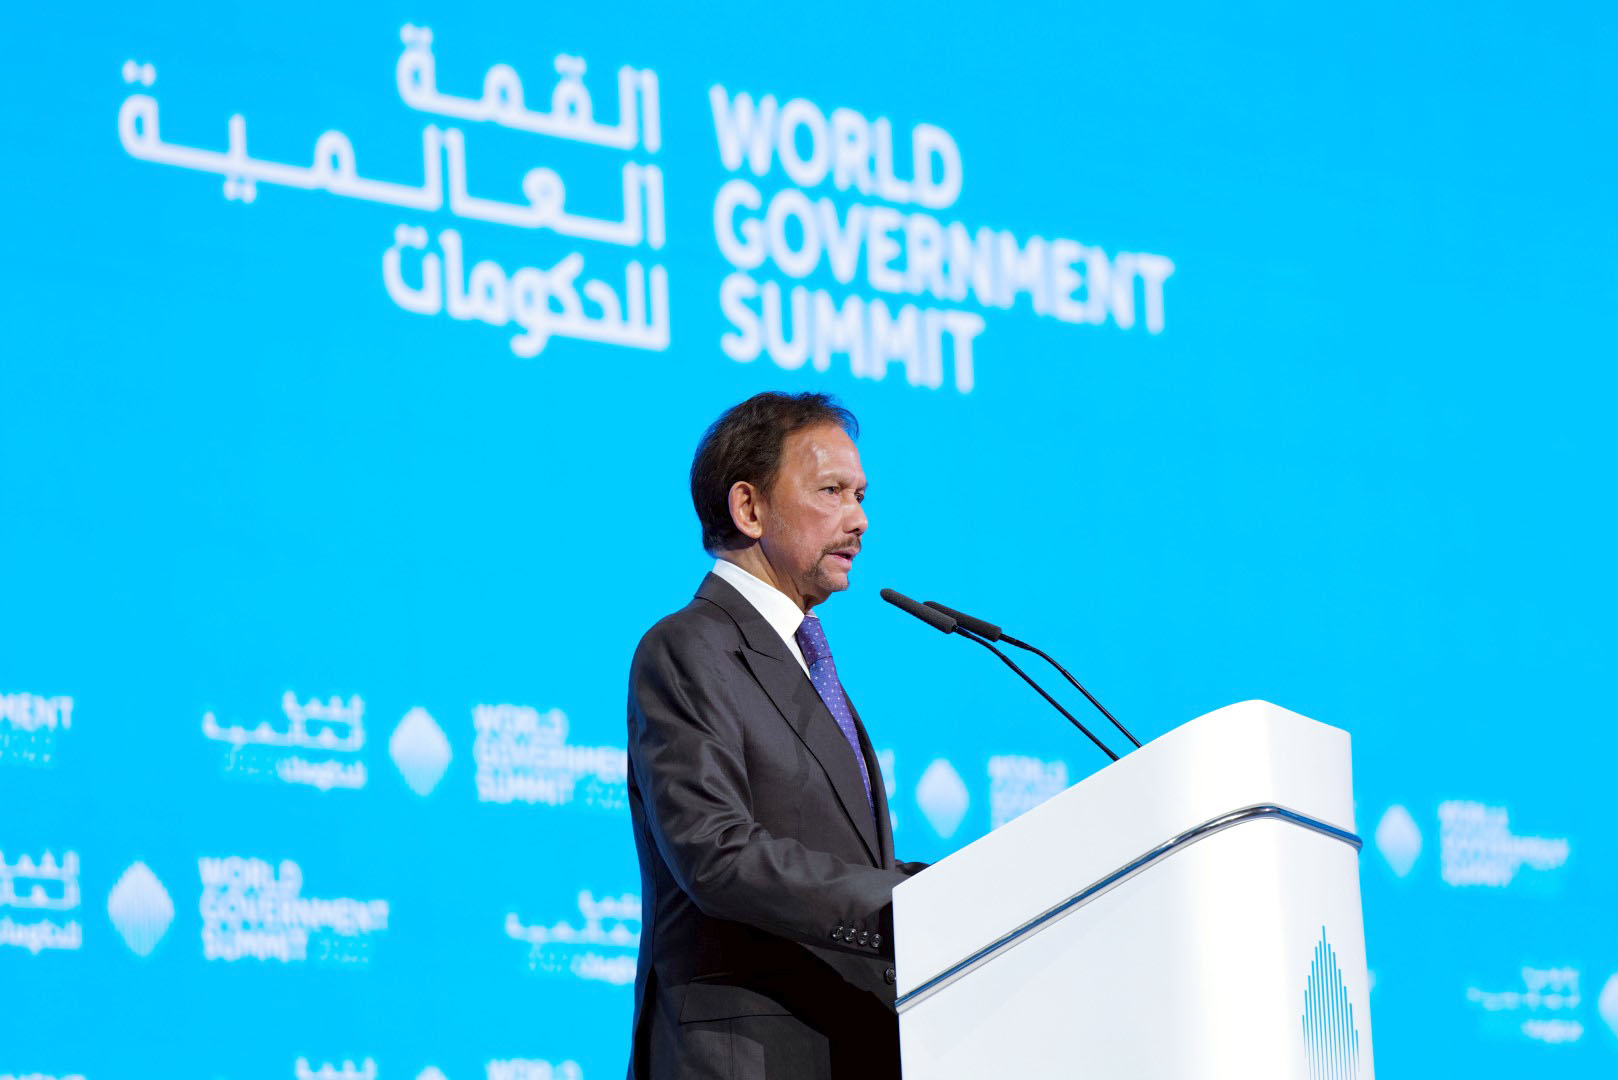 محمد بن راشد يشهد جلسة سلطان بروناي ضمن فعاليات القمة العالمية للحكومات 2022